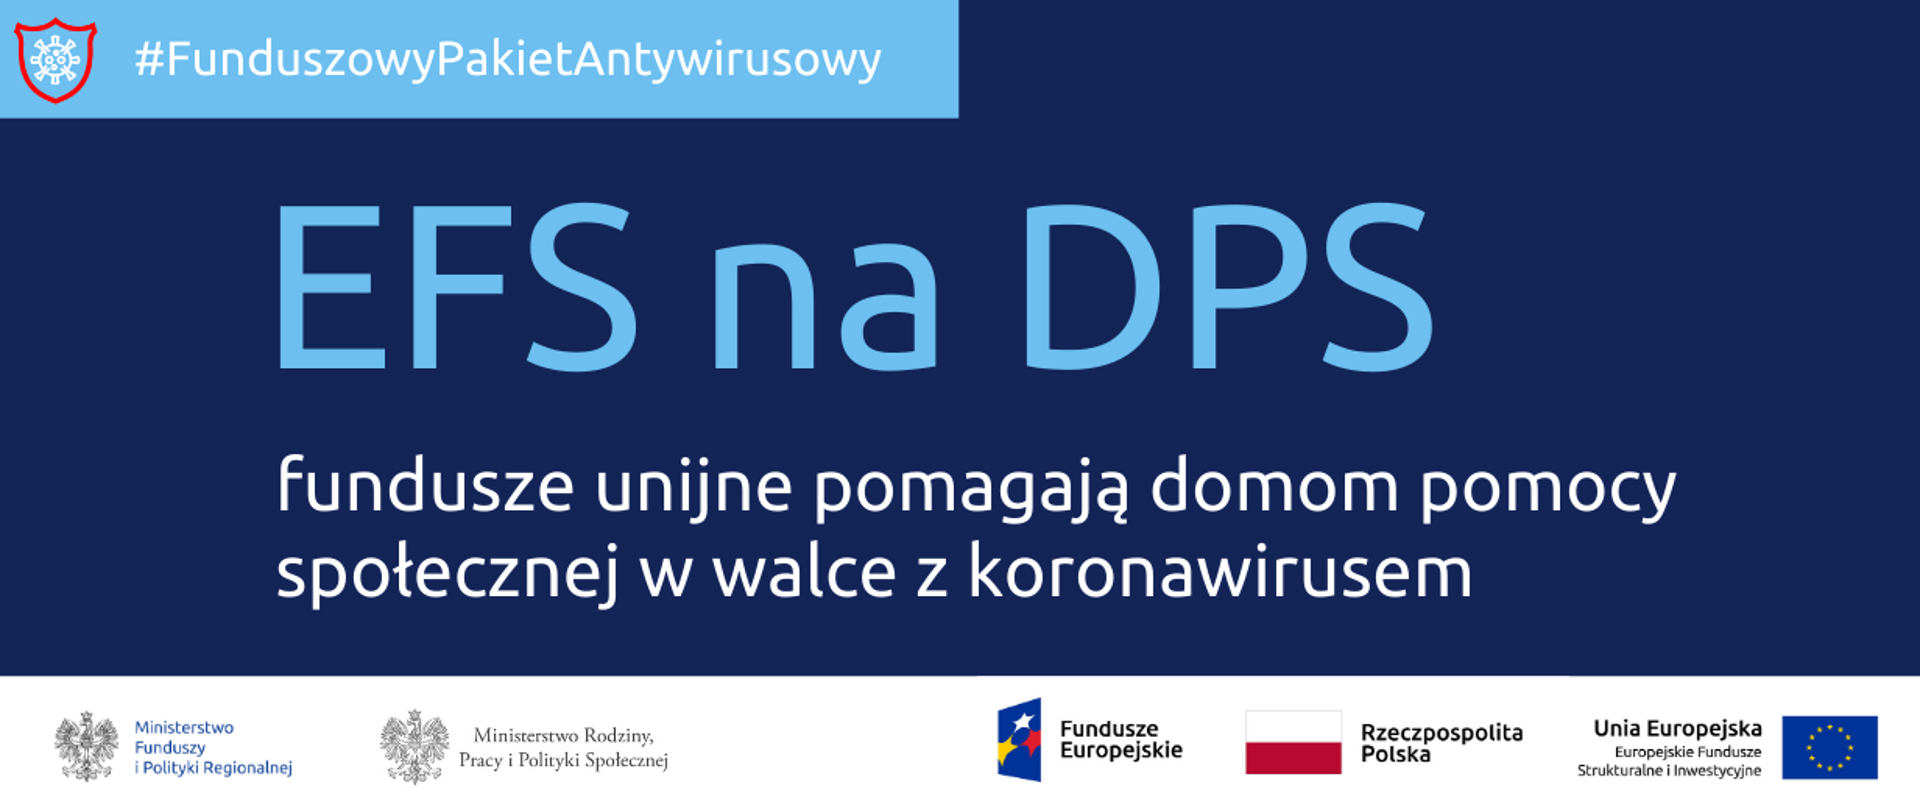 Napis: Funduszowy Pakiet Antywirusowy: EFS na DPS, fundusze unijne pomagają domom pomocy społecznej w walce z koronawirusem. Na dole ikonki Facebooka oraz Twittera, logotypy Funduszy Europejskich i Ministerstwa Funduszy i Polityki Regionalnej, flaga Polski.